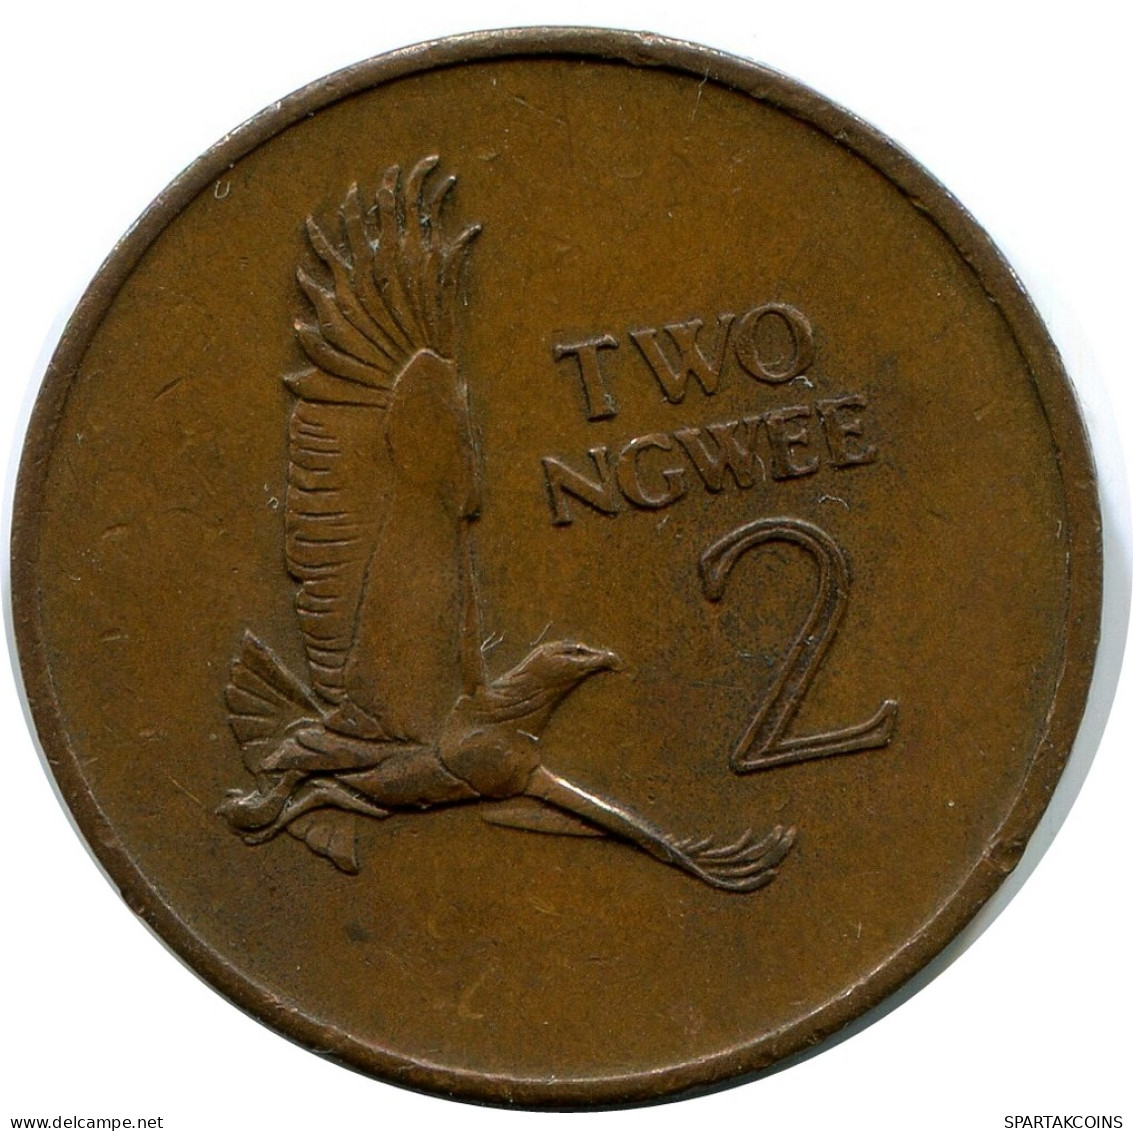 2 NGWEE 1968 ZAMBIA Coin #AP965.U - Zambia